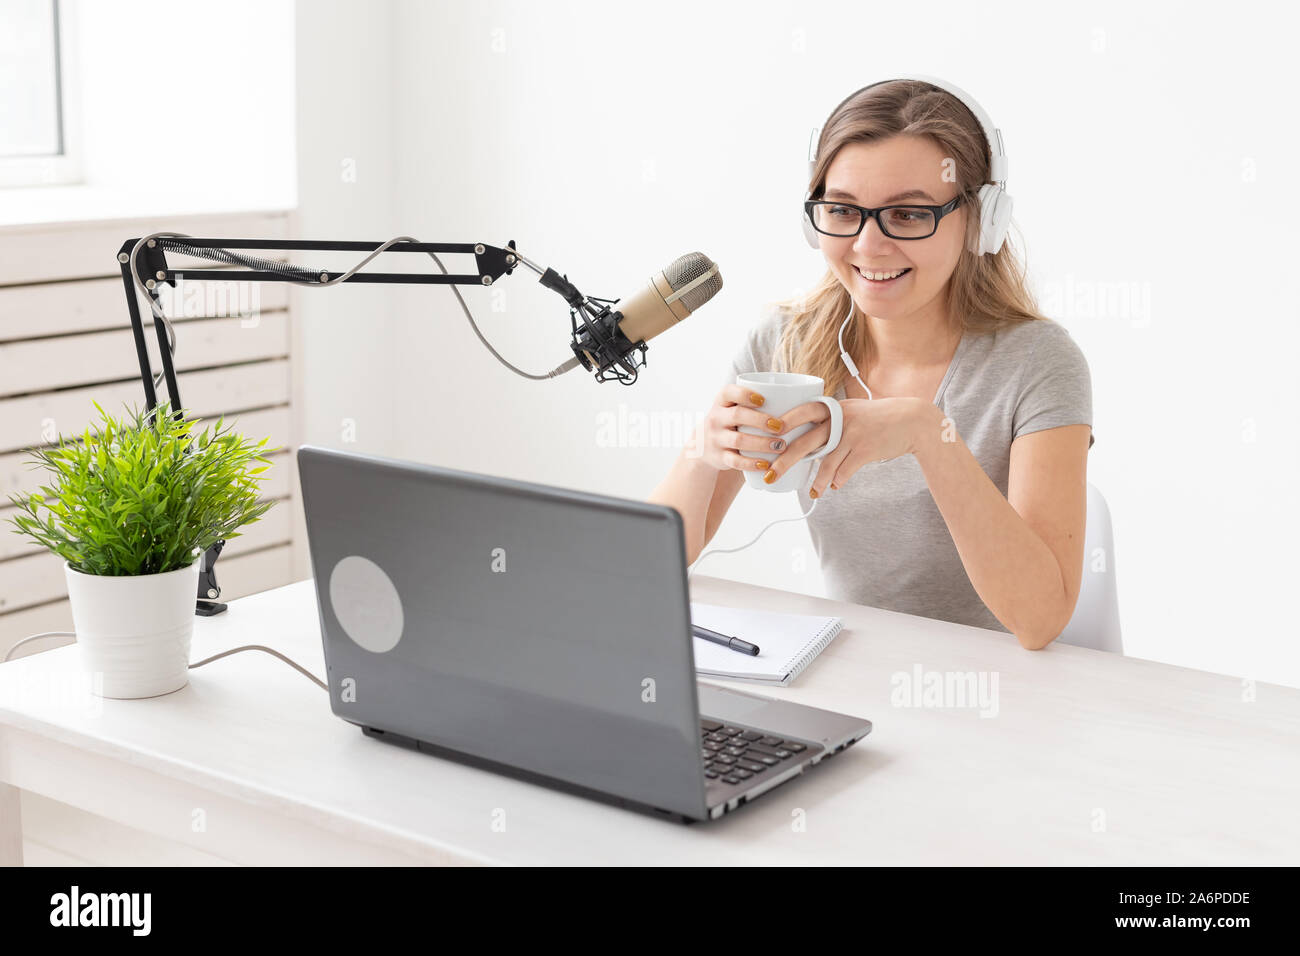 Radio, DJ, blogging e concetto di persone - donna sorridente seduto davanti a un microfono, host a radio Foto Stock